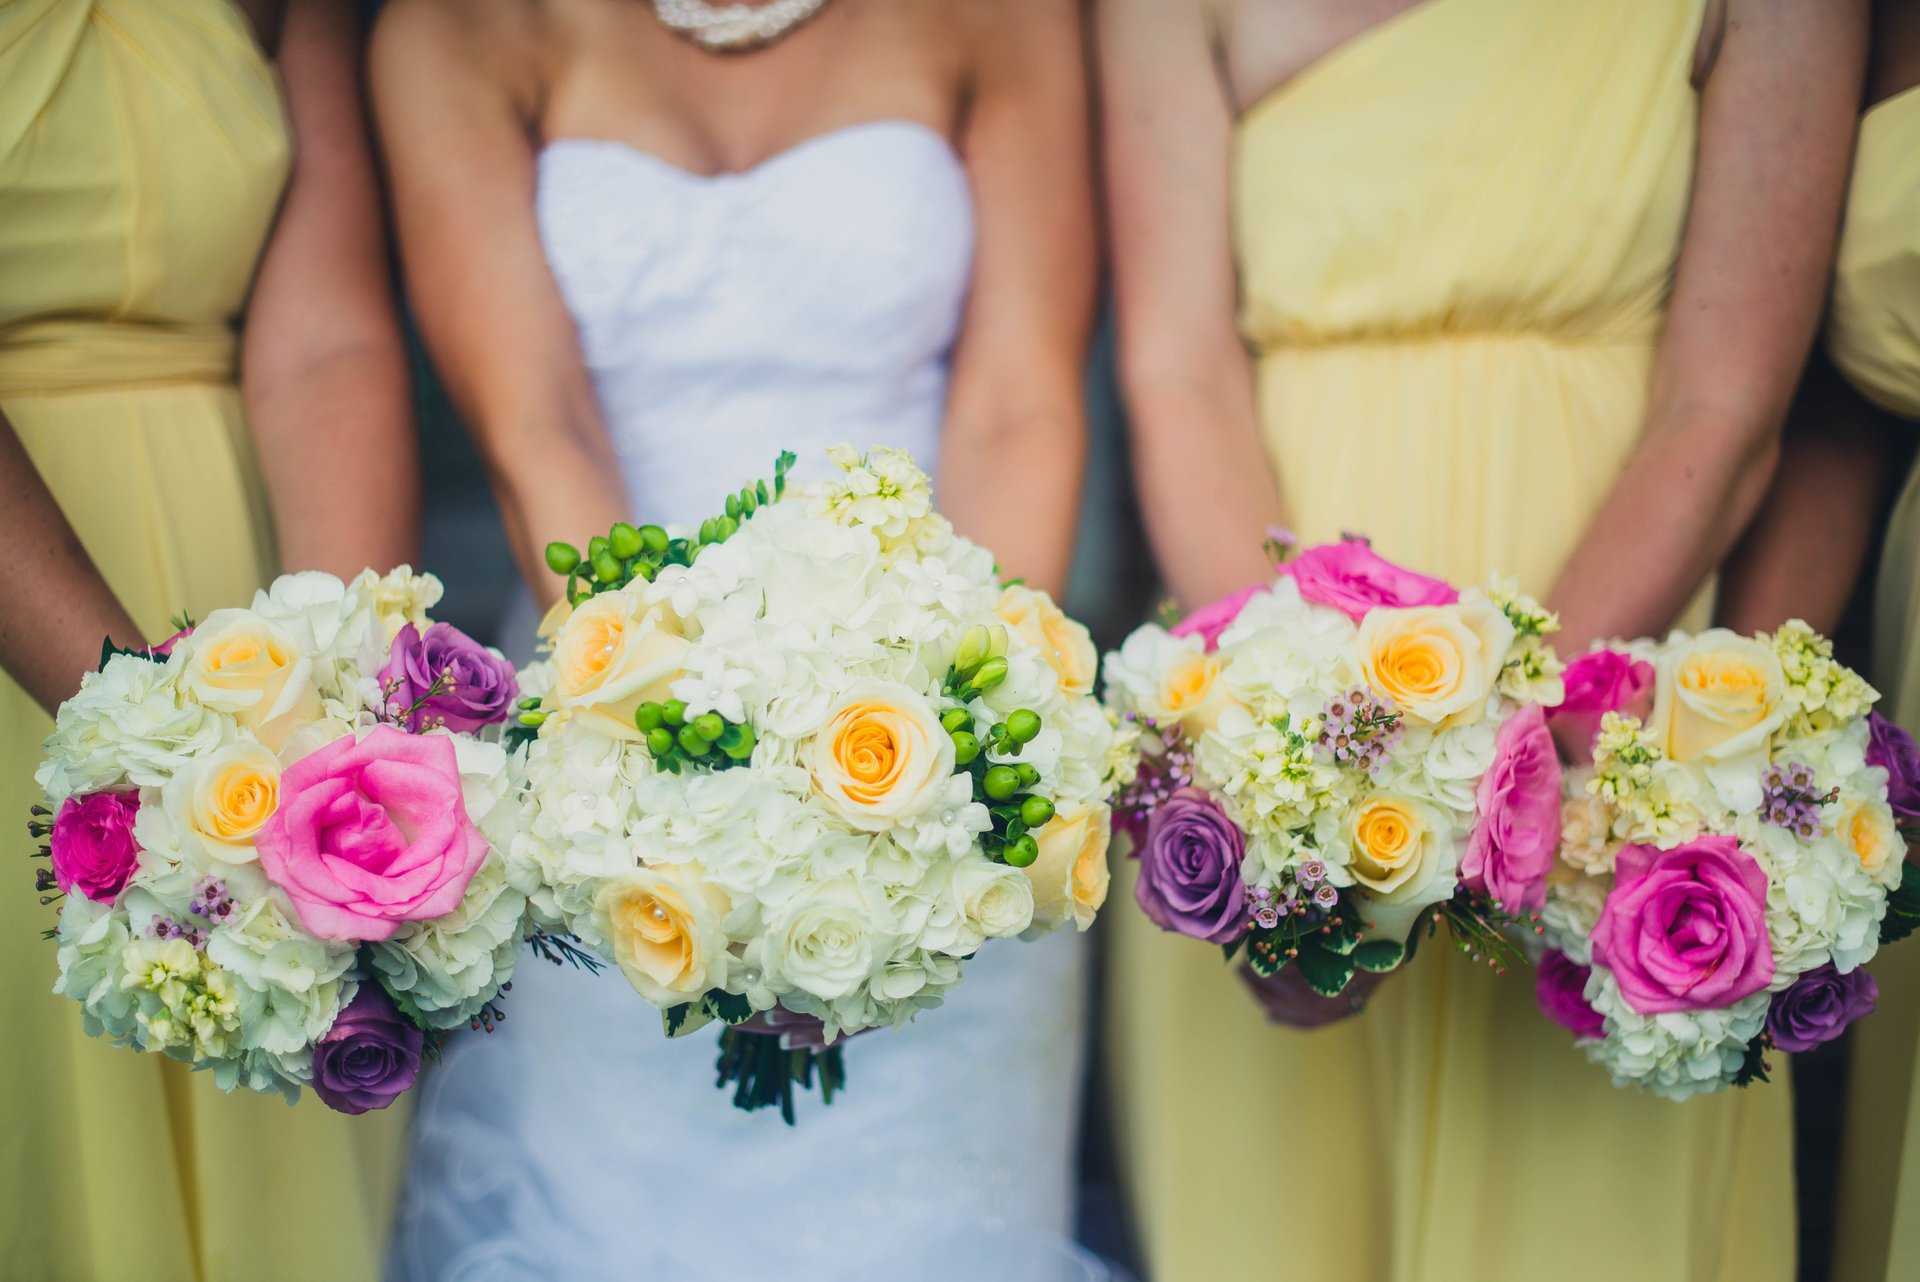 Синий букет невесты – это редкость но он невероятно красив Как сделать его частью свадебного образа какими цветами дополнить можно ли соорудить самому - обо всем расскажем в статье Выбирайте цветы будьте стильной